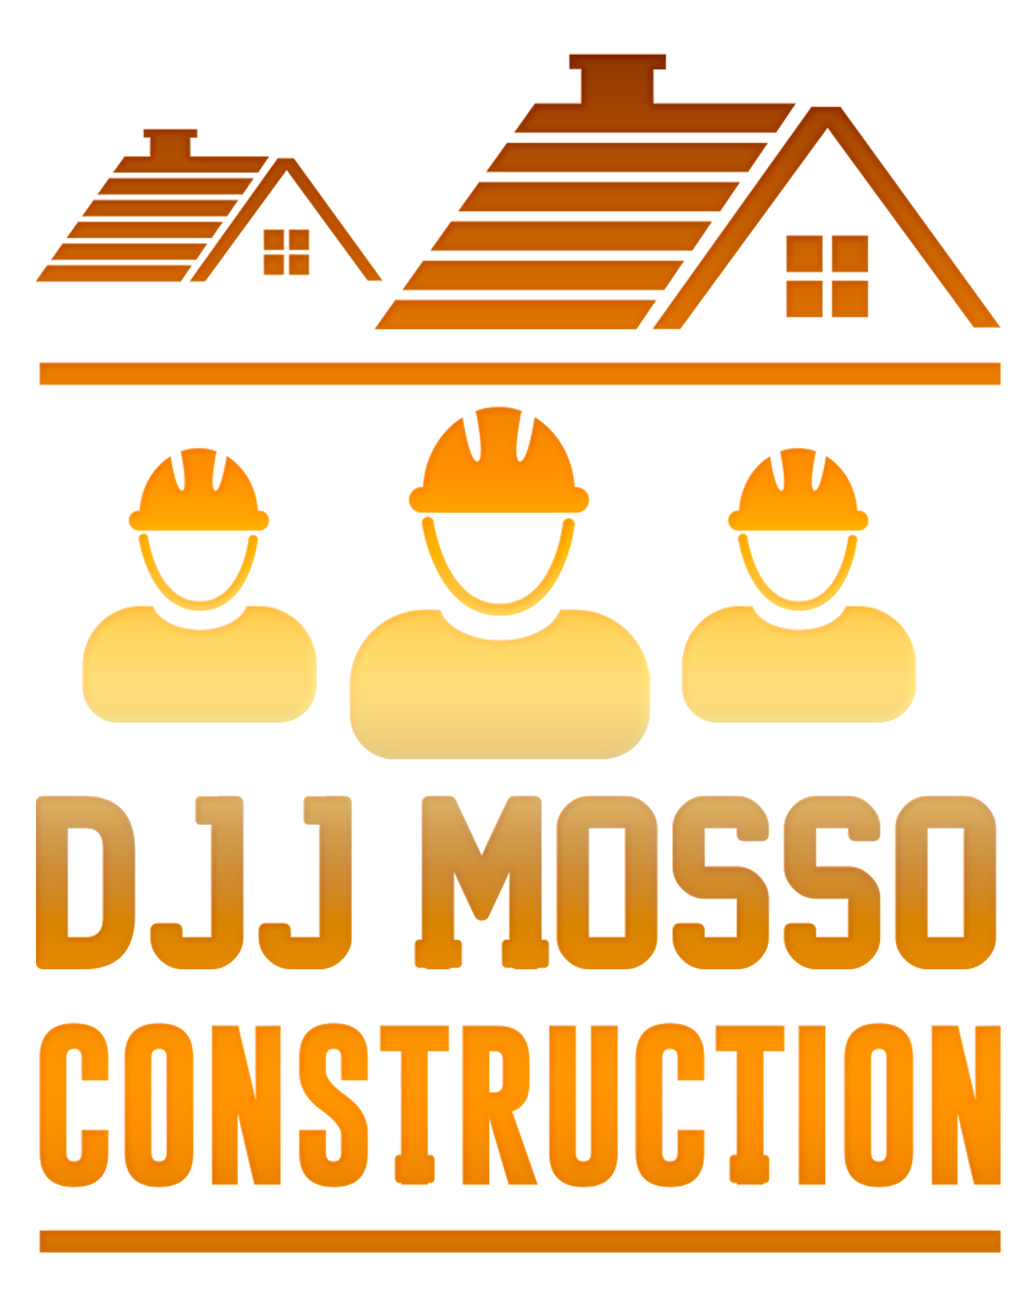 DJJ Mosso Construction